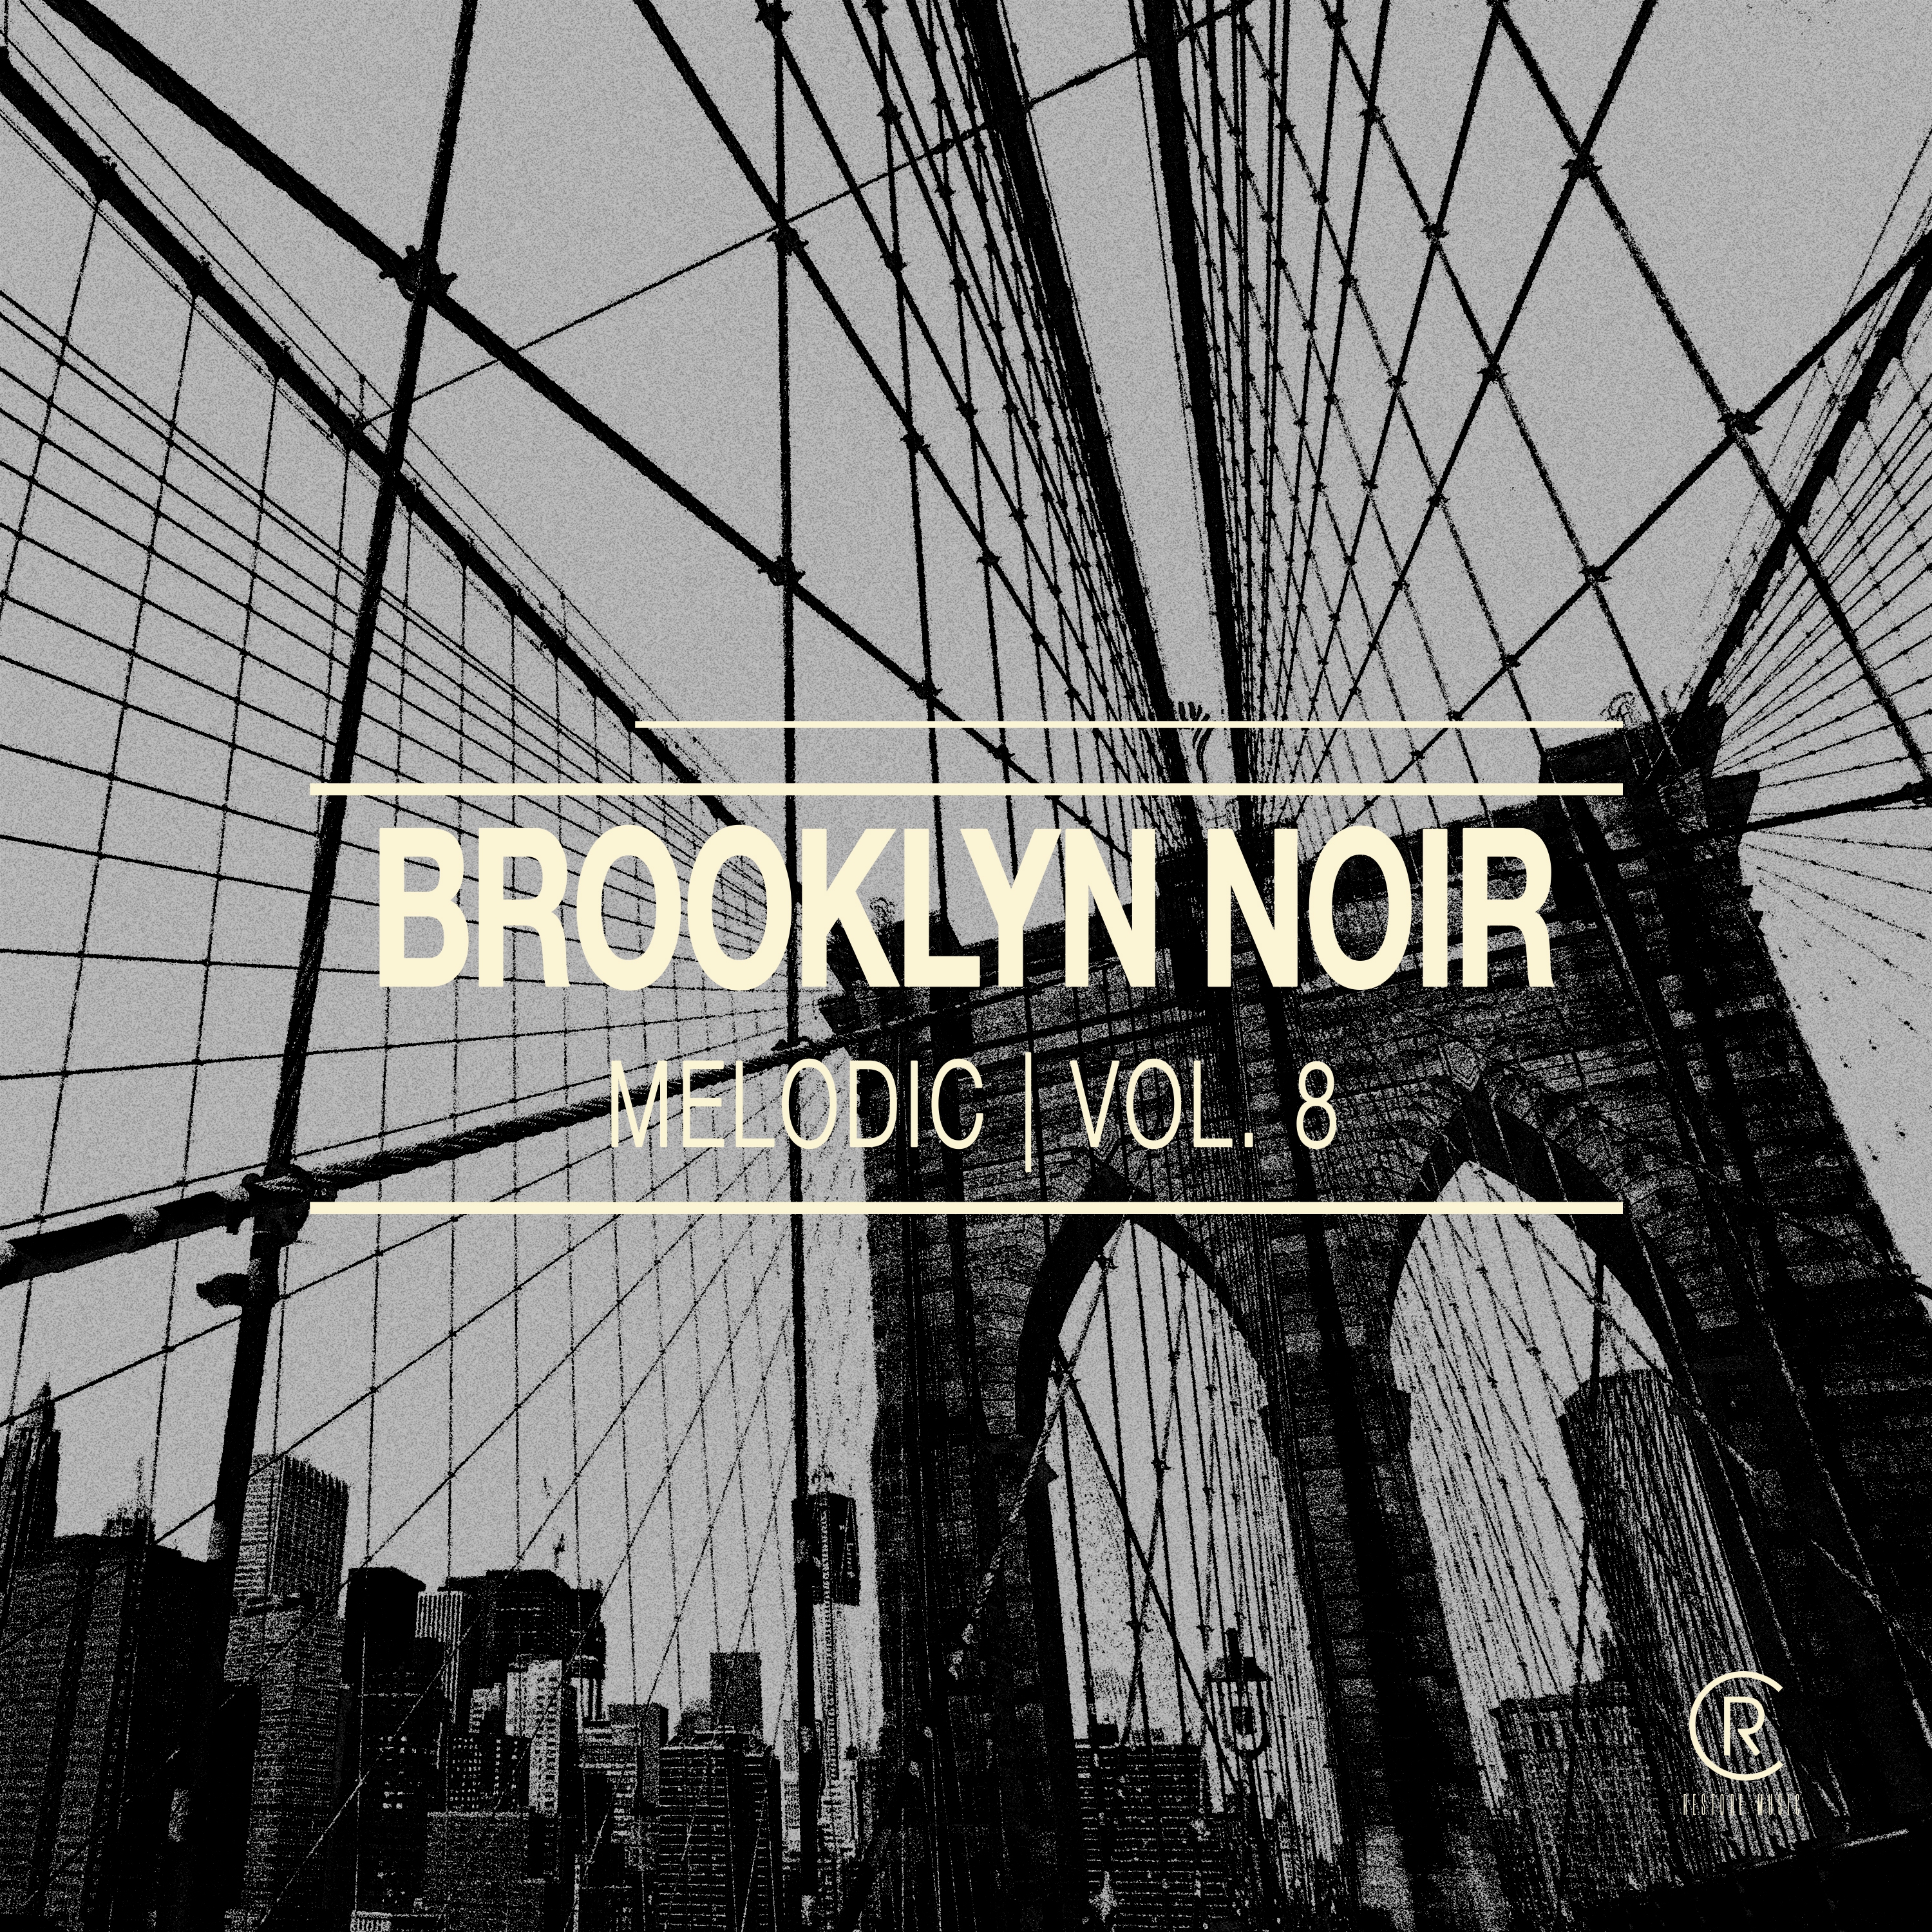 Brooklyn Noir Melodic, Vol. 8